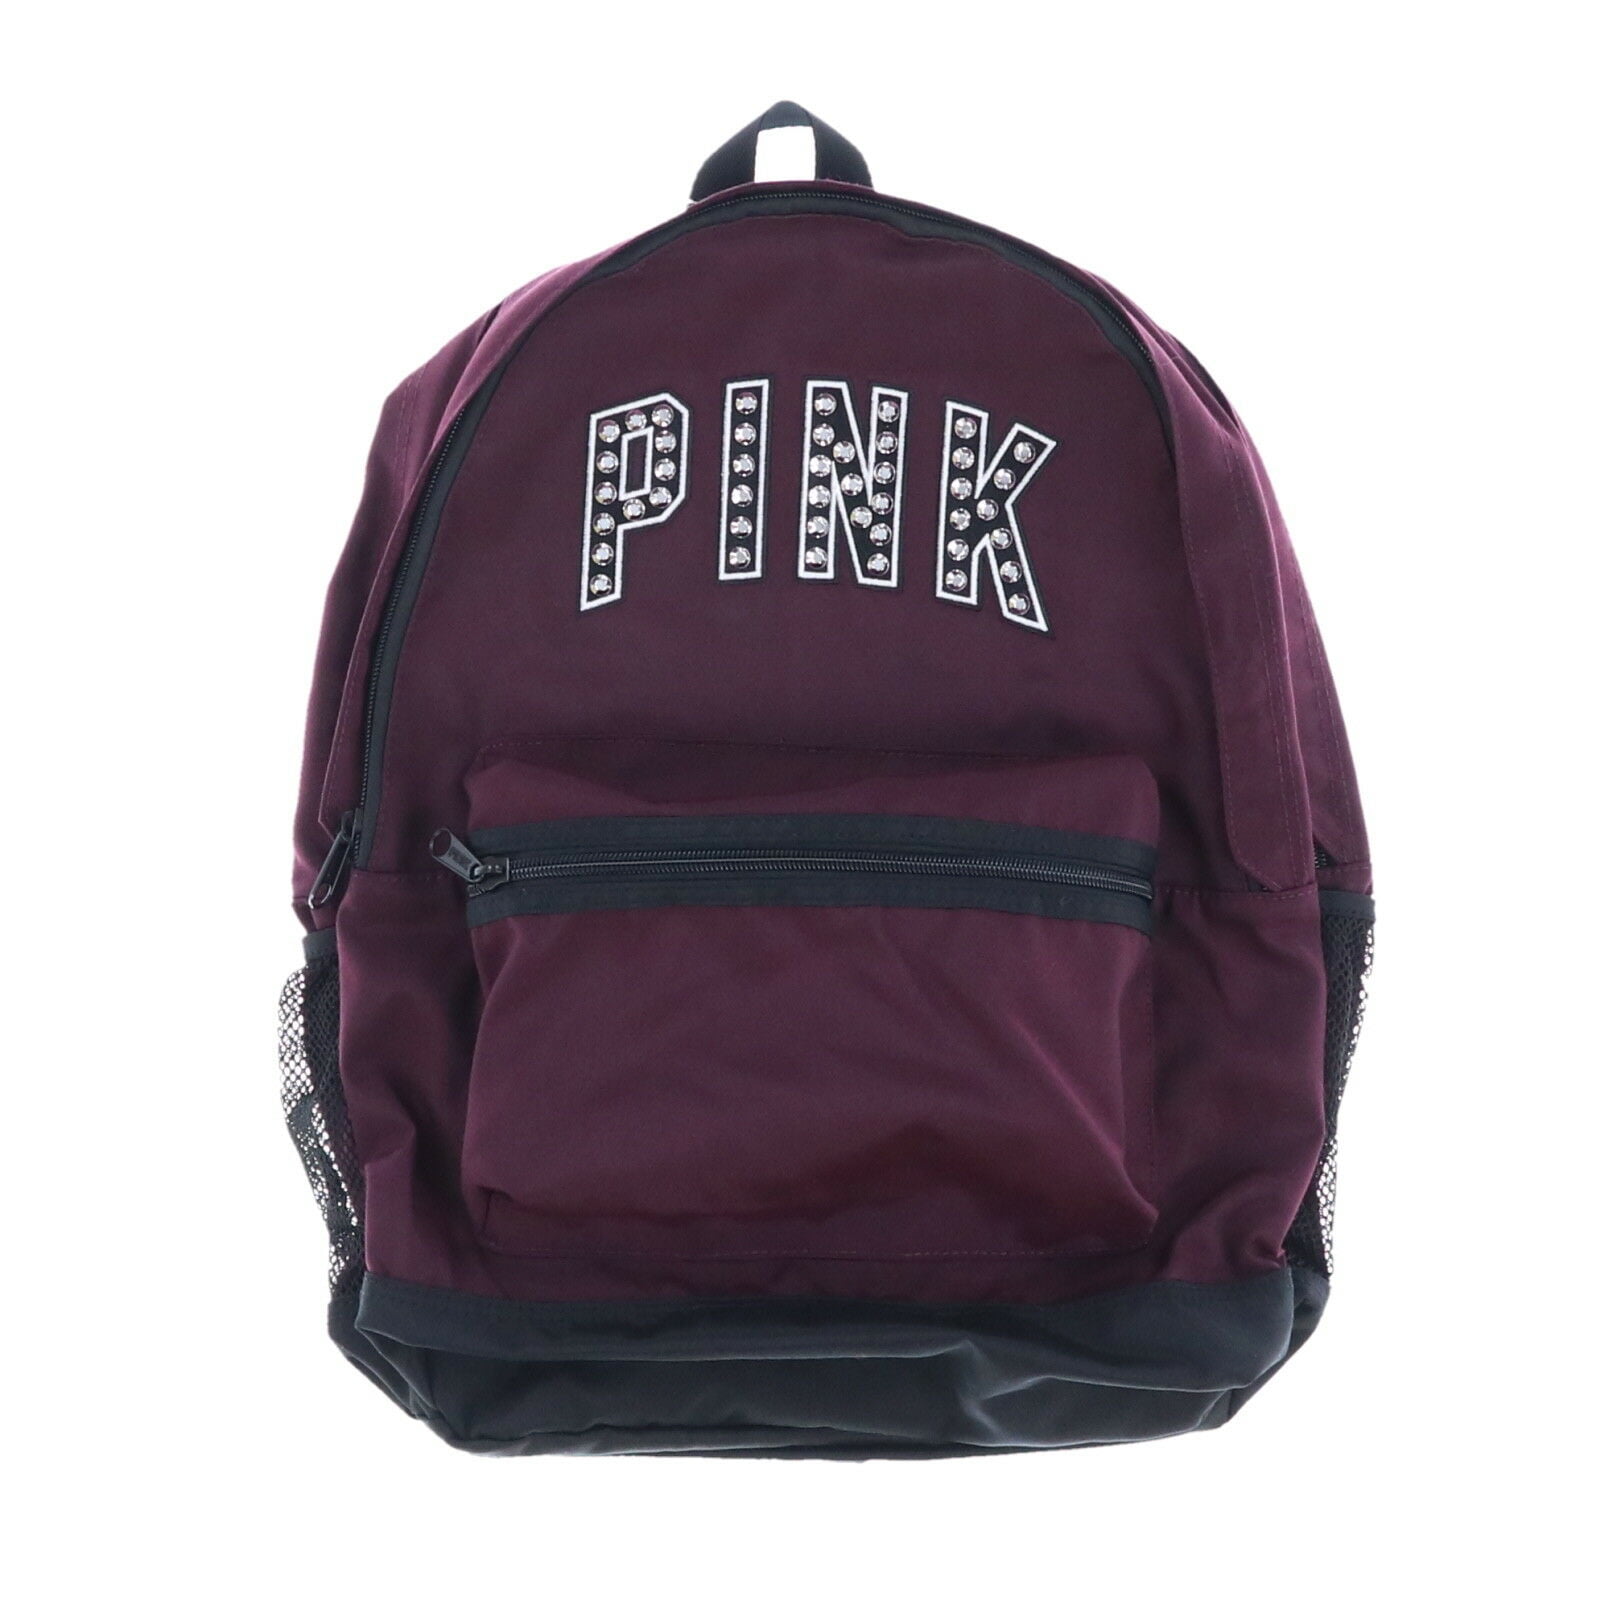 Victoria S Secret Pink Campus Backpack Bag Black Orchid Studs